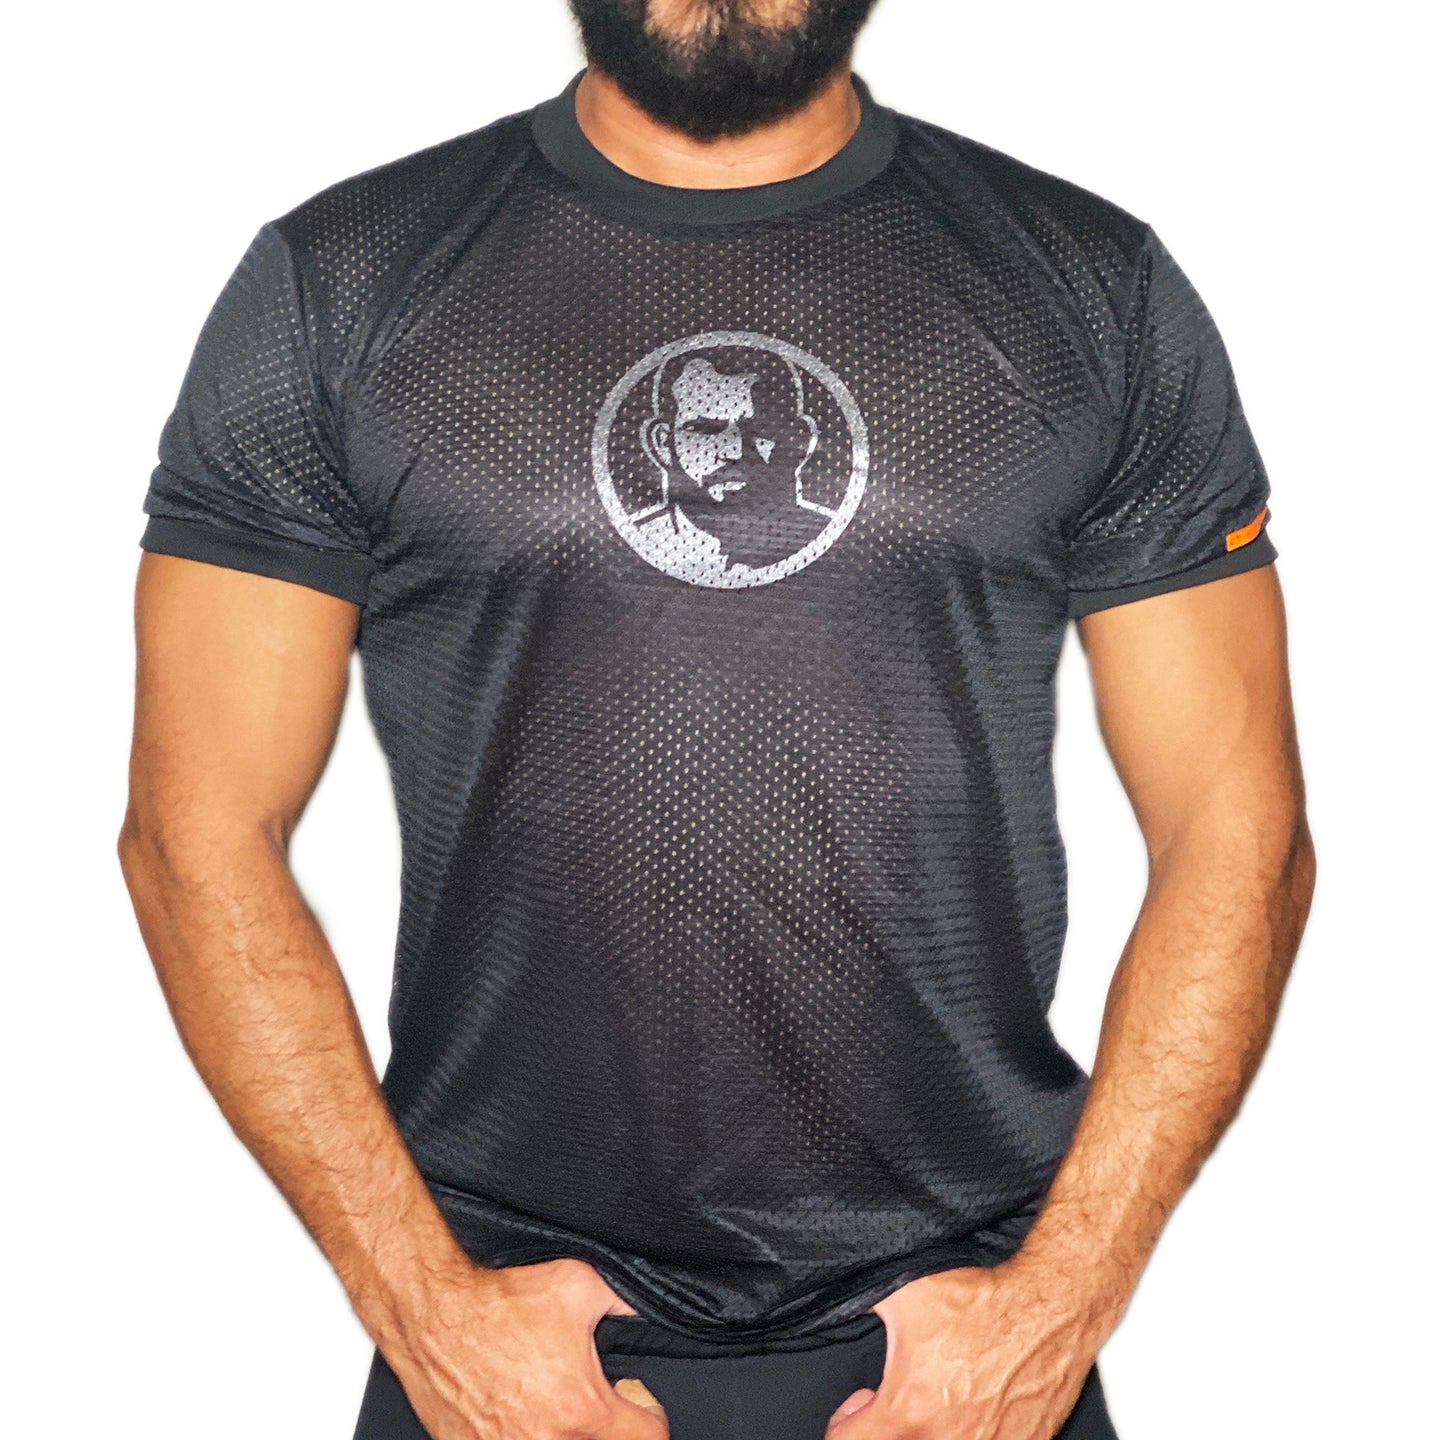 Man Icon hand printed on black  Mesh Tshirt (Last Few)